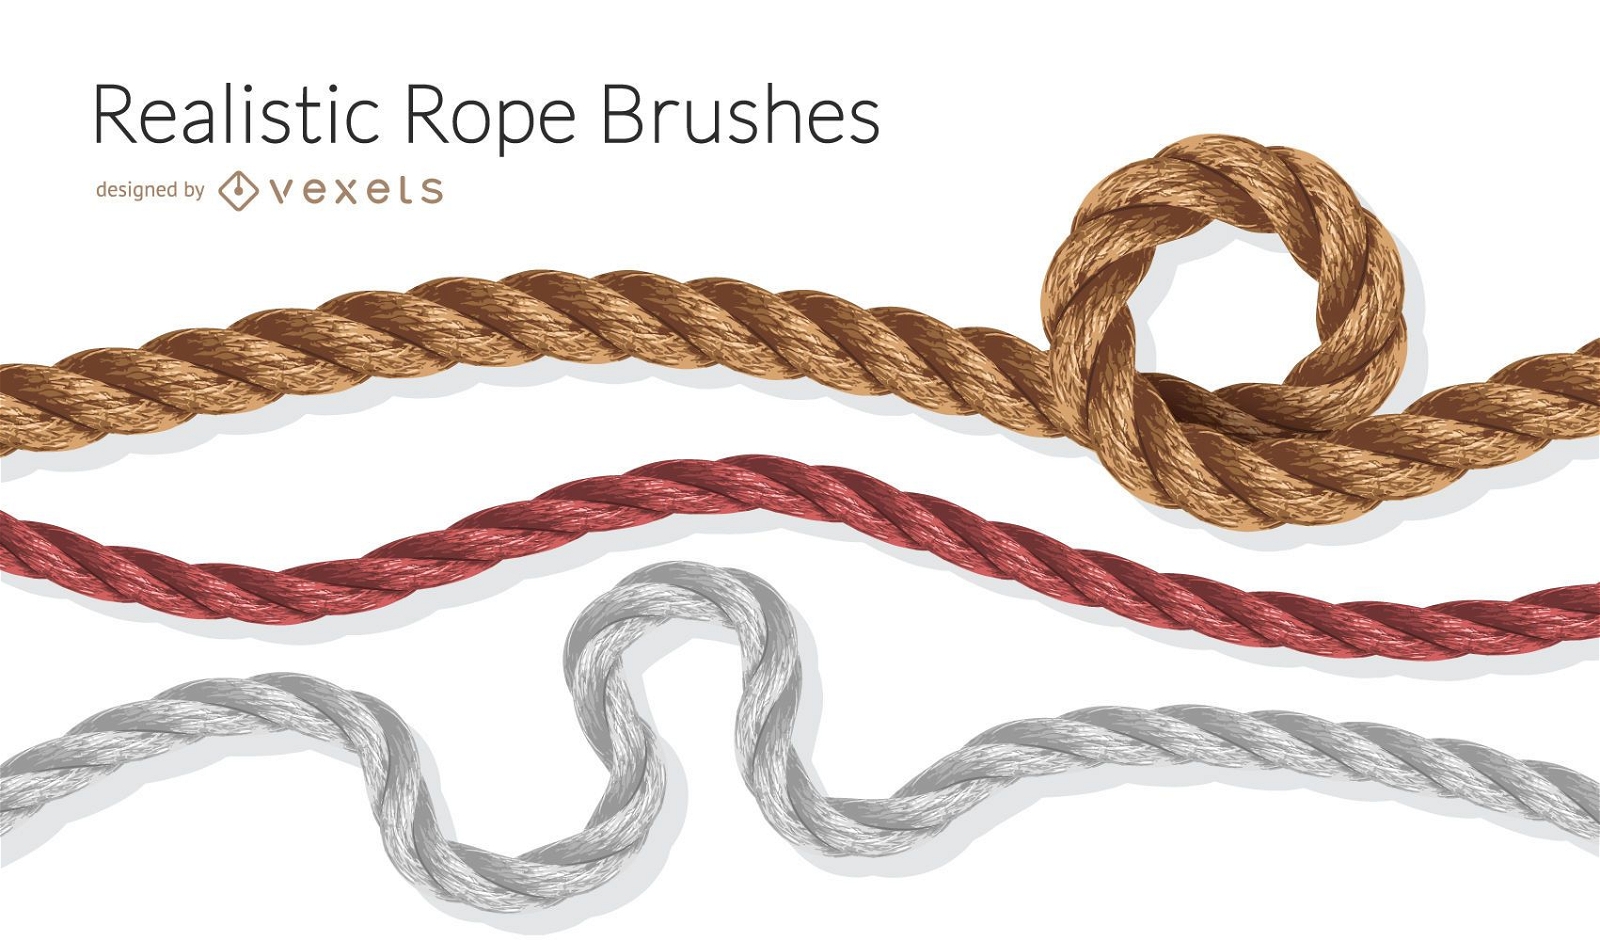 Realistic rope brushes illustration set